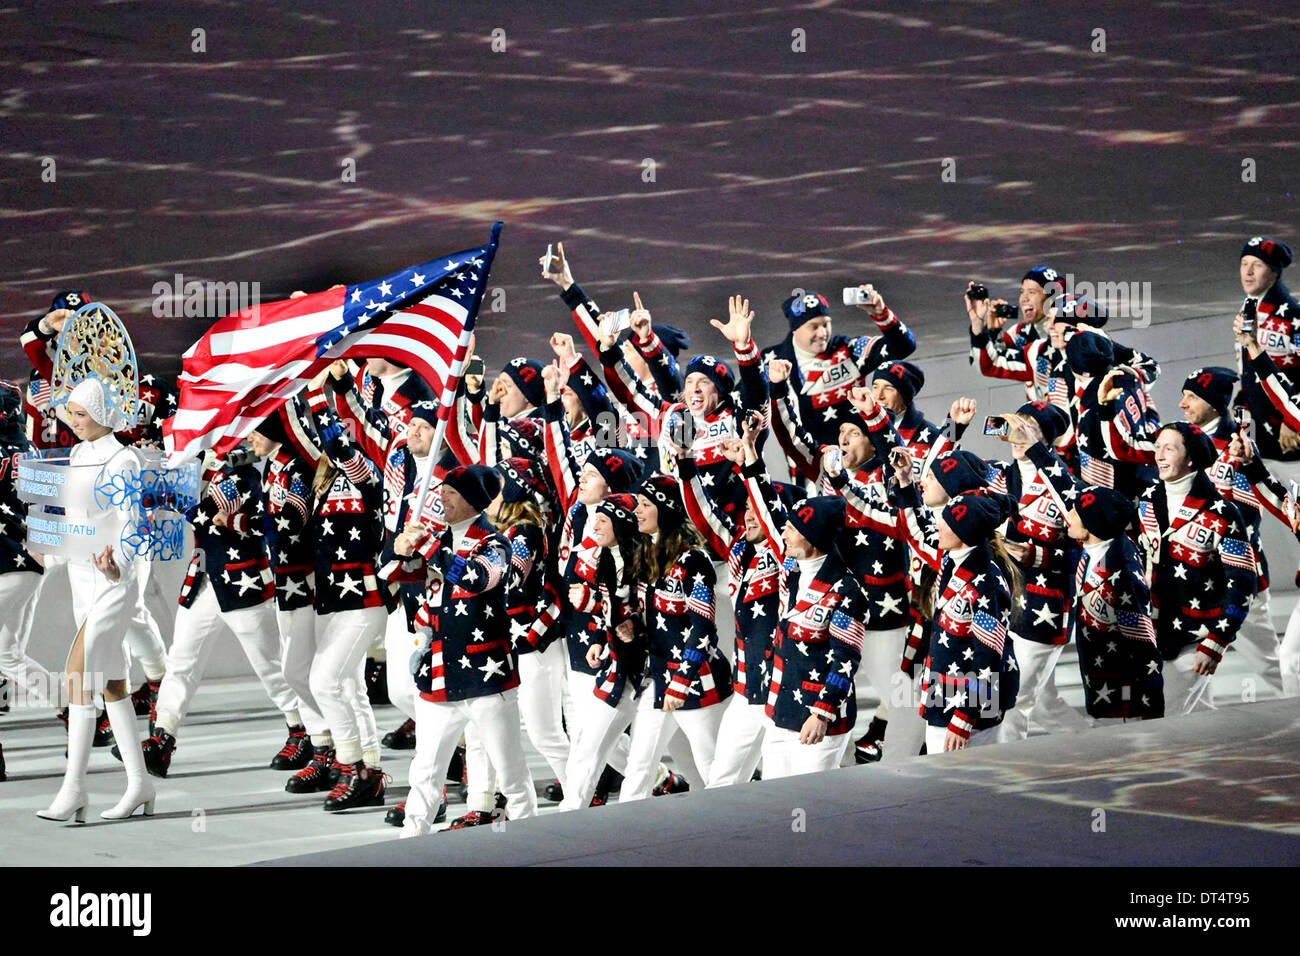 Noi Olimpiadi Invernali team marchigiano nella Fisht Stadio Olimpico durante la cerimonia di apertura del Sochi 2014 Giochi Olimpici invernali al Parco Olimpico Febbraio 7, 2014 in Sochi, Russia. Foto Stock